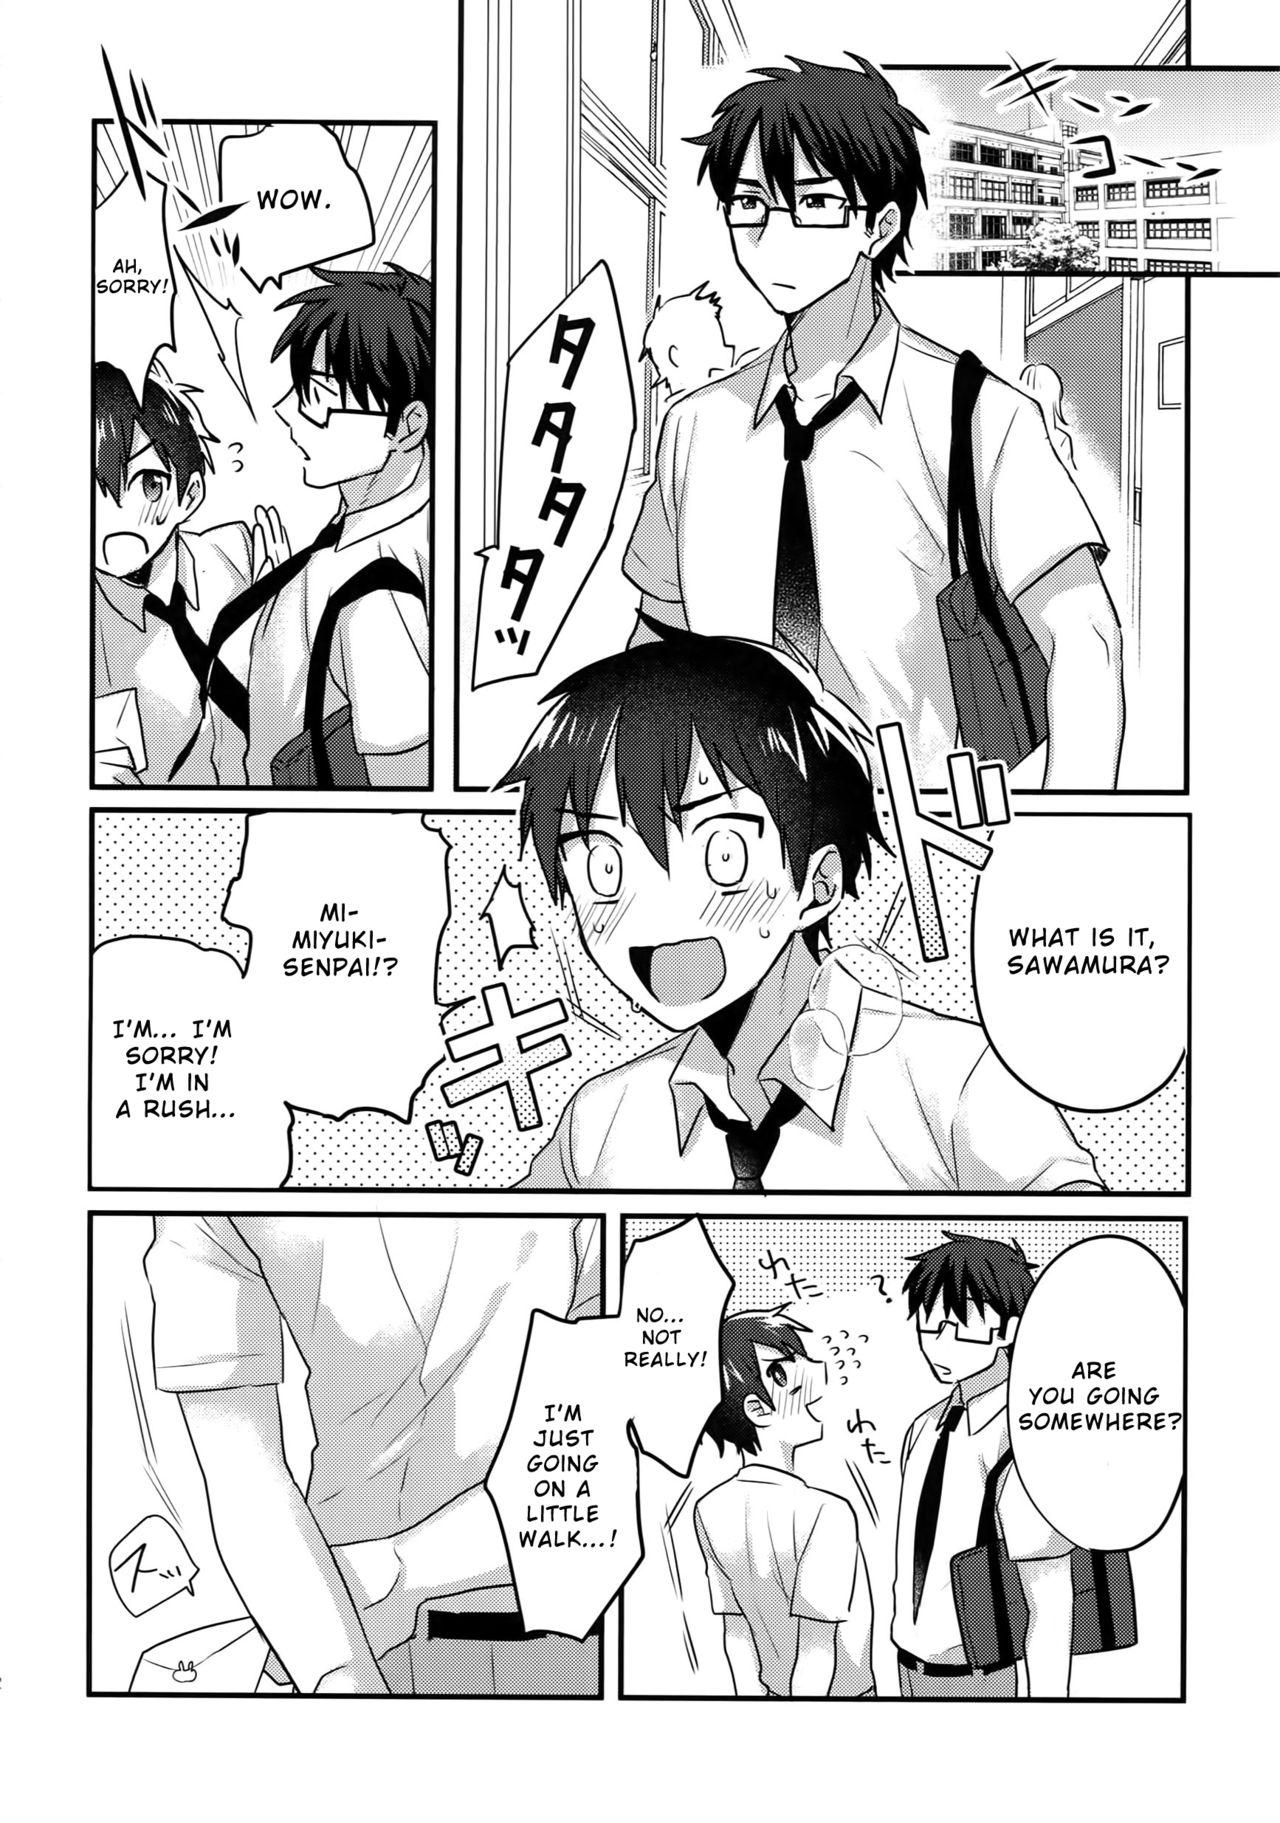 Spooning Futsuu no Nichijou o Kimi to - Daiya no ace Boobies - Page 11